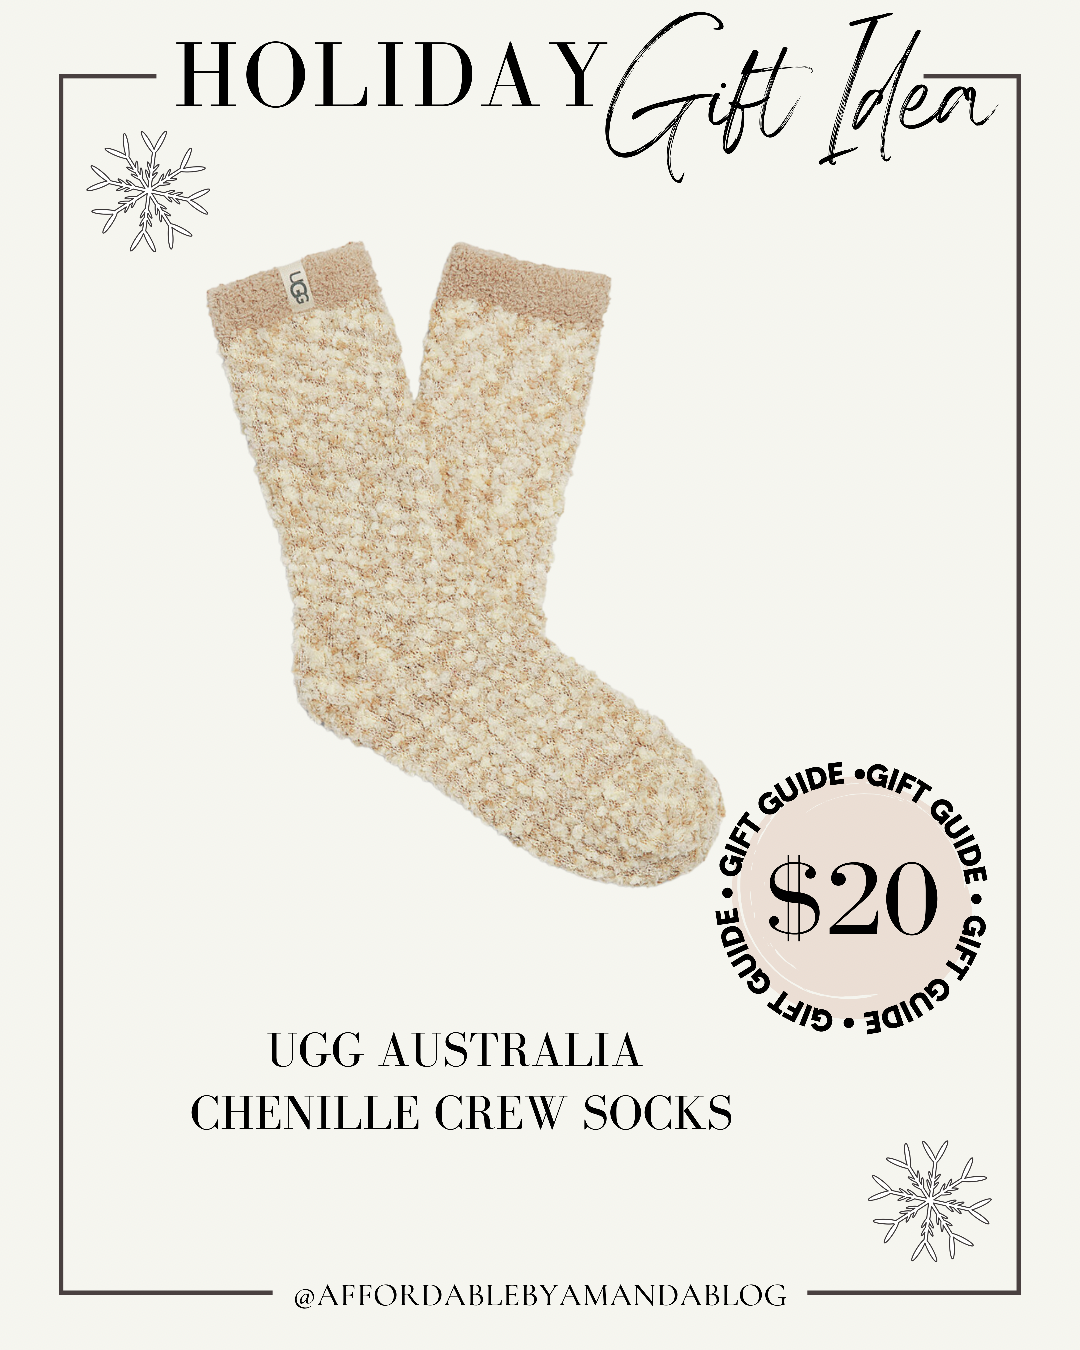 Nordstrom UGG Australia Chenille Crew Socks - Holiday Gift Guide Idea - Stocking Stuffer Under $20